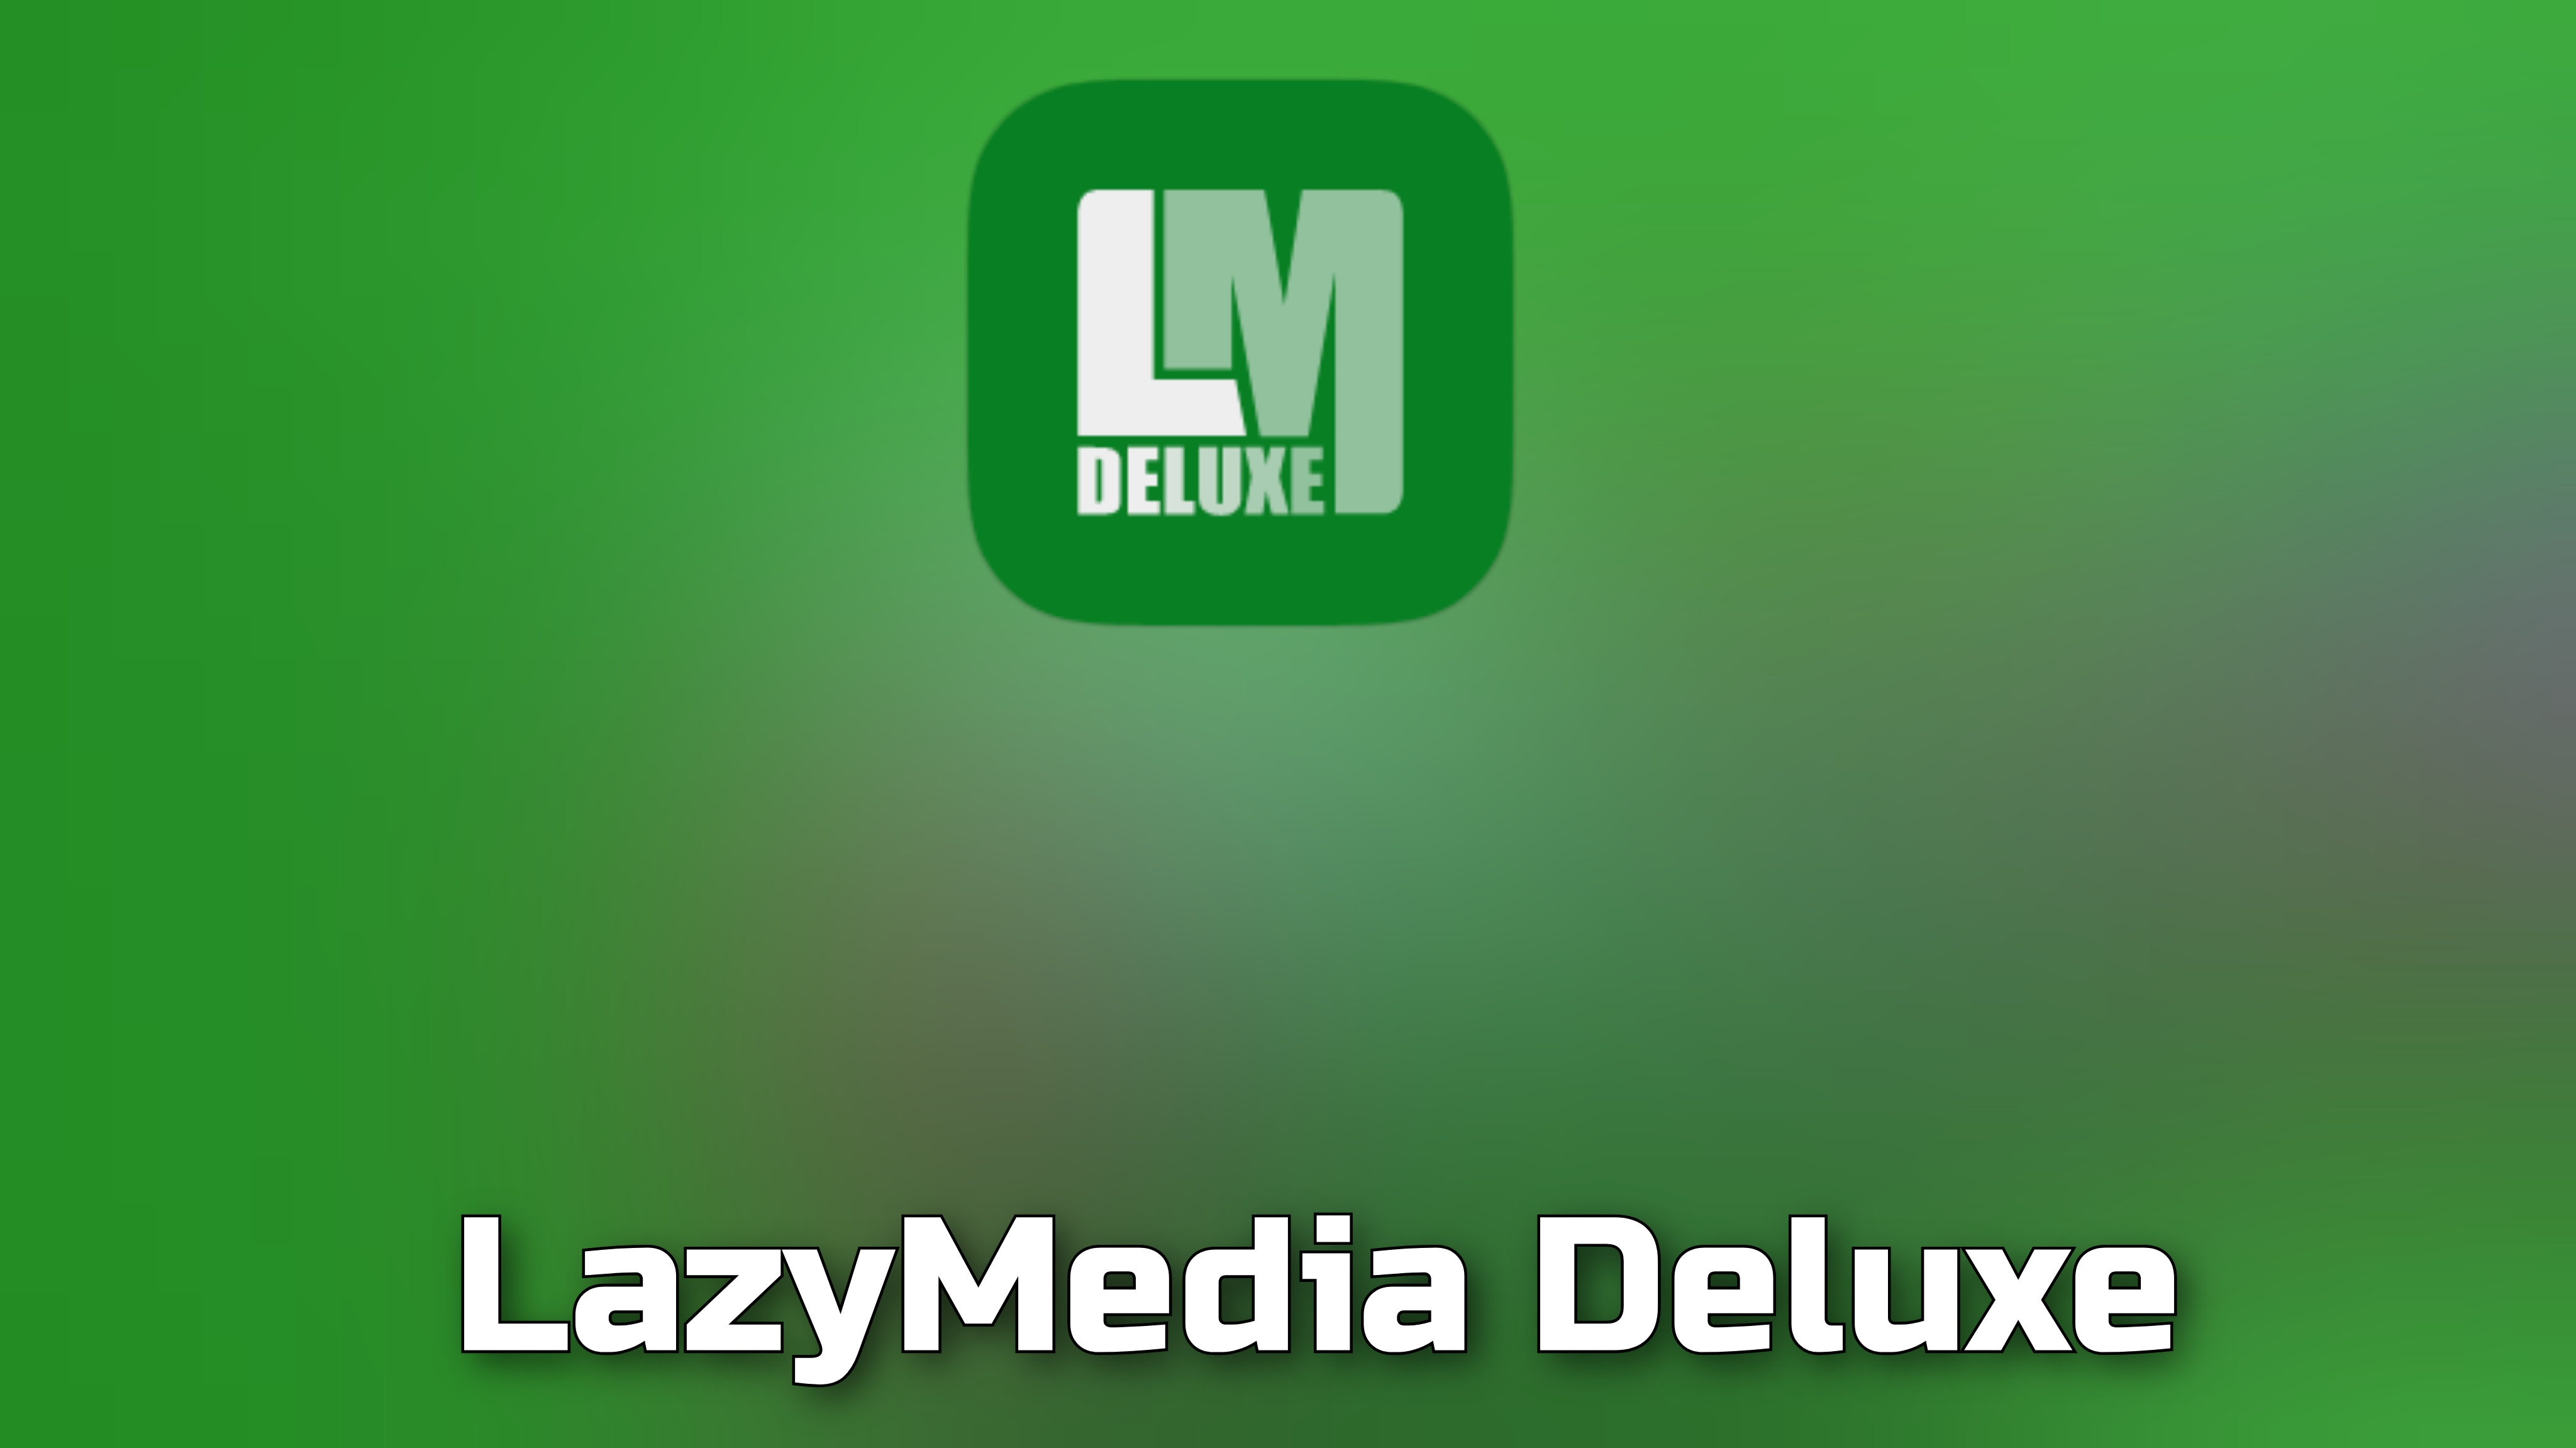 Lazymedia как установить на телевизор. LAZYMEDIA Делюкс. LAZYMEDIA Deluxe на LG. LAZYMEDIA Deluxe на ПК.